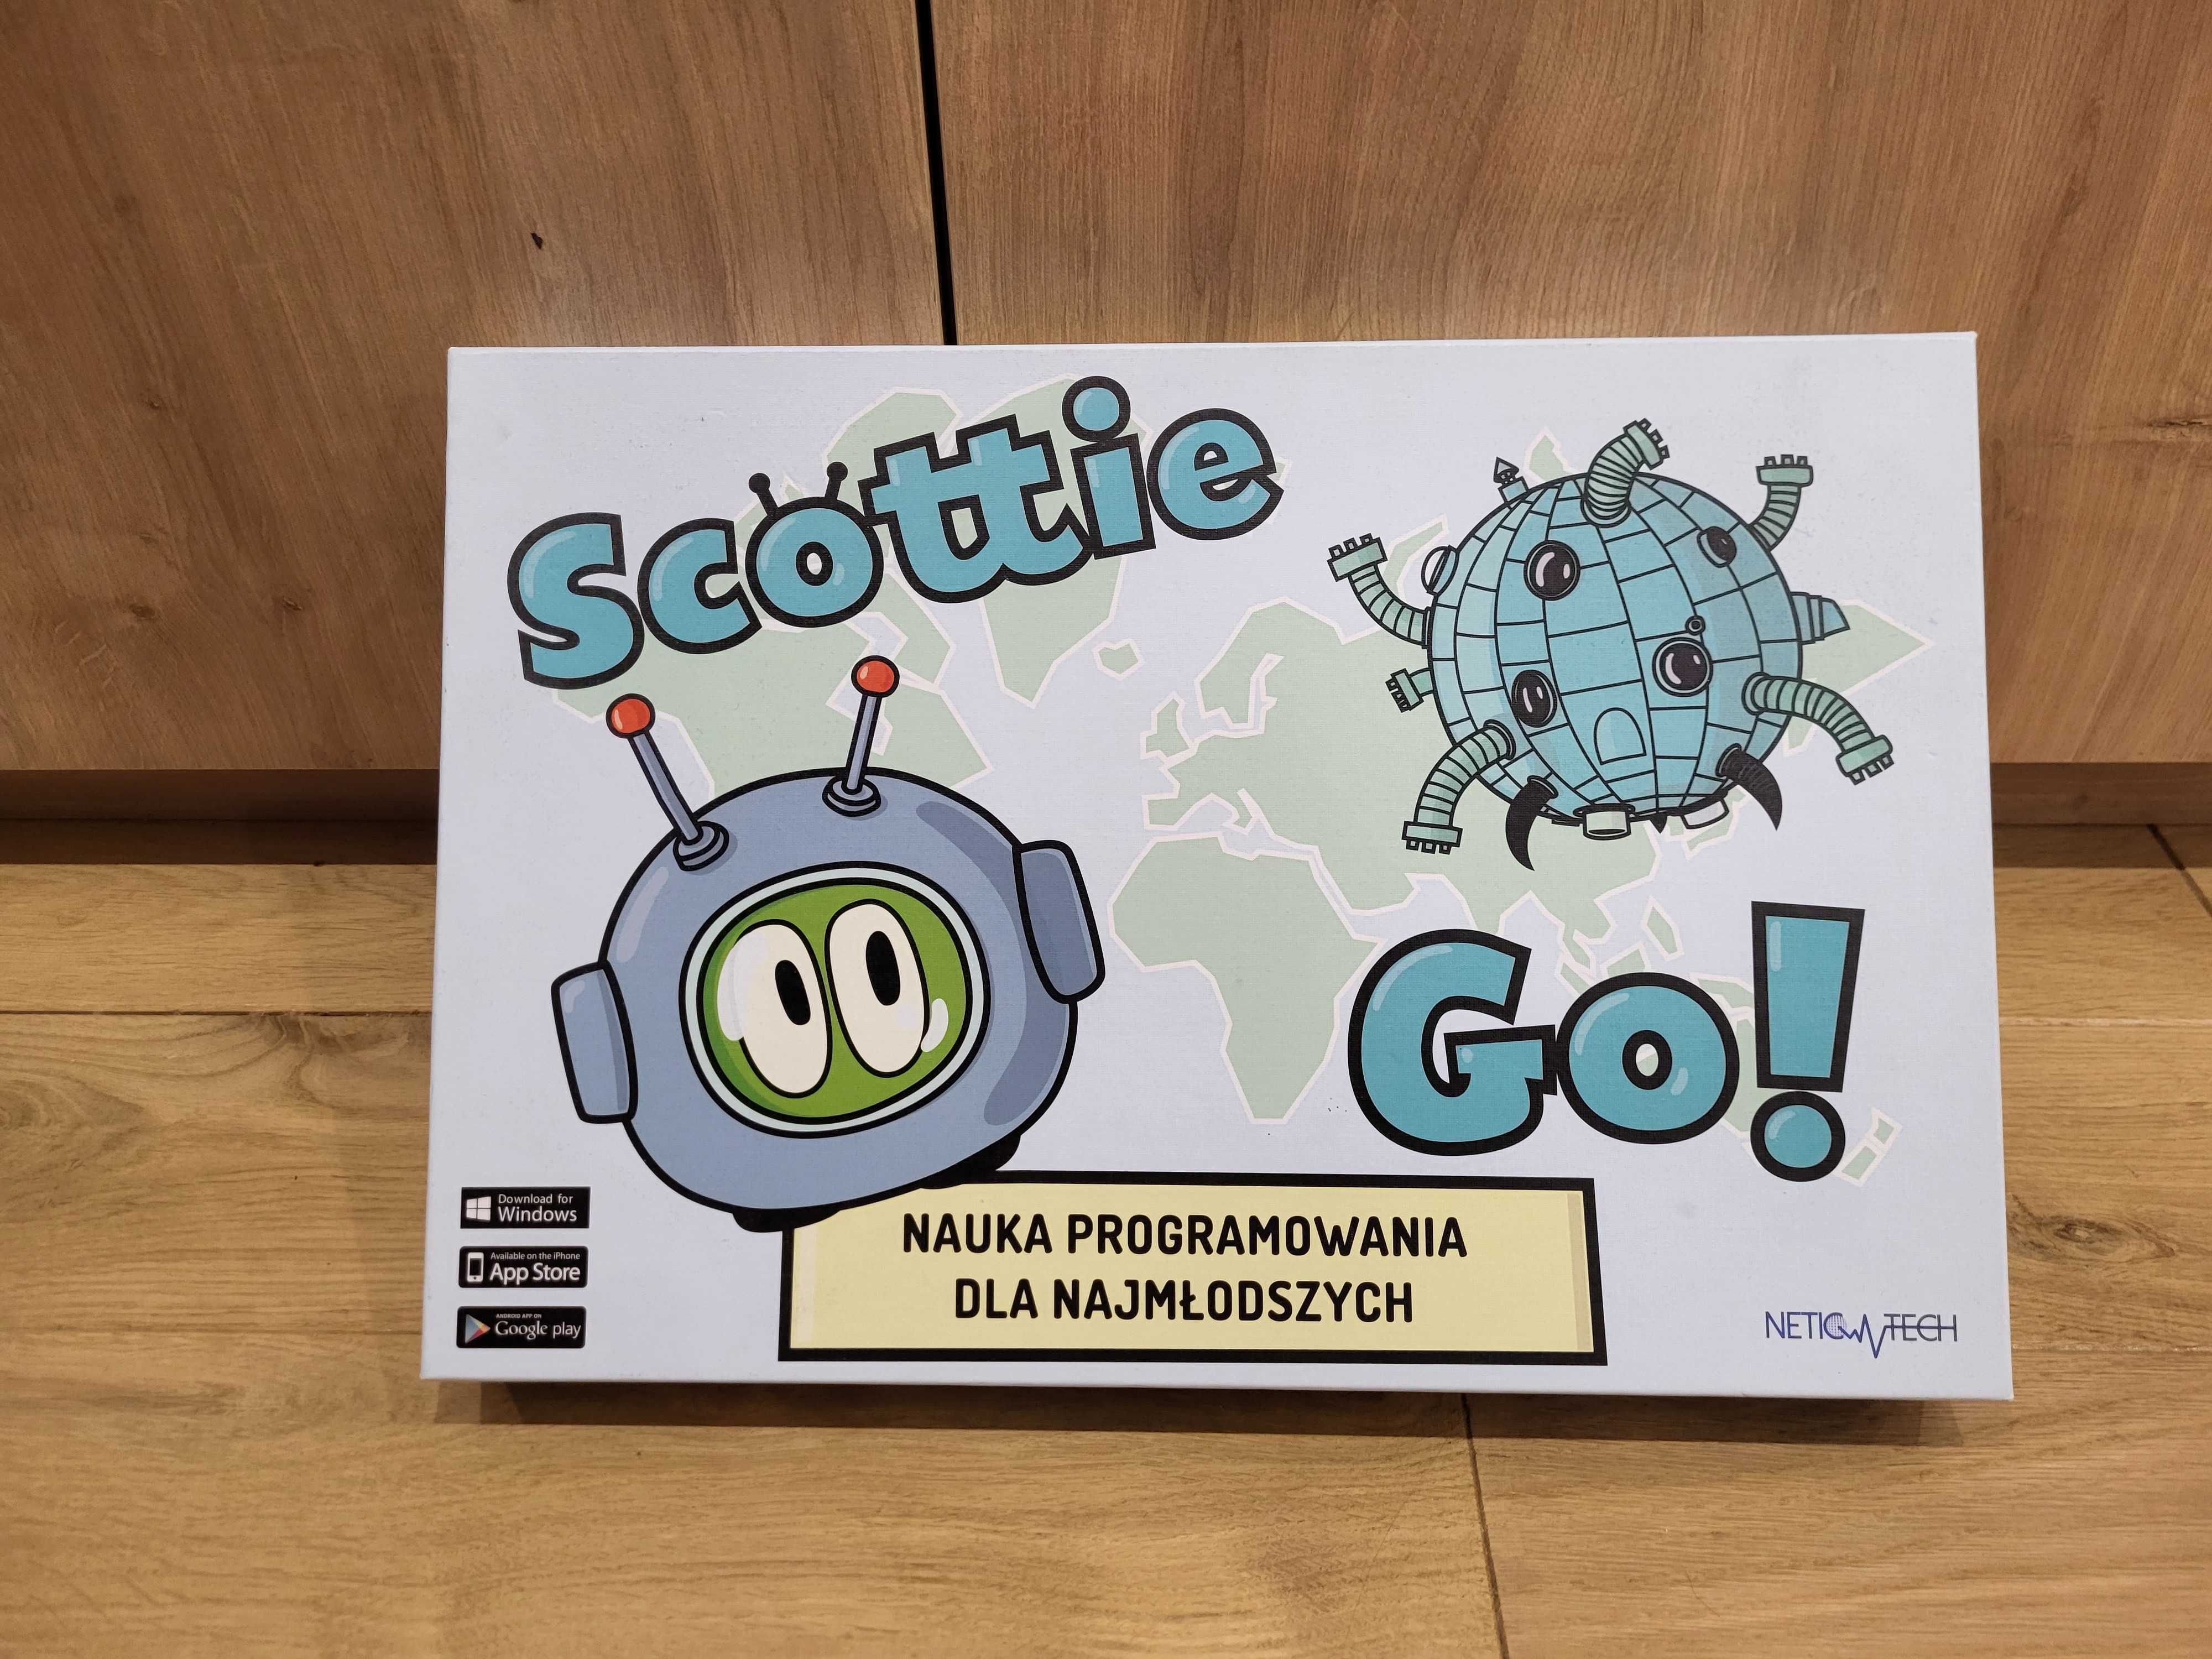 Scottie Go - zestaw do nauki programowania